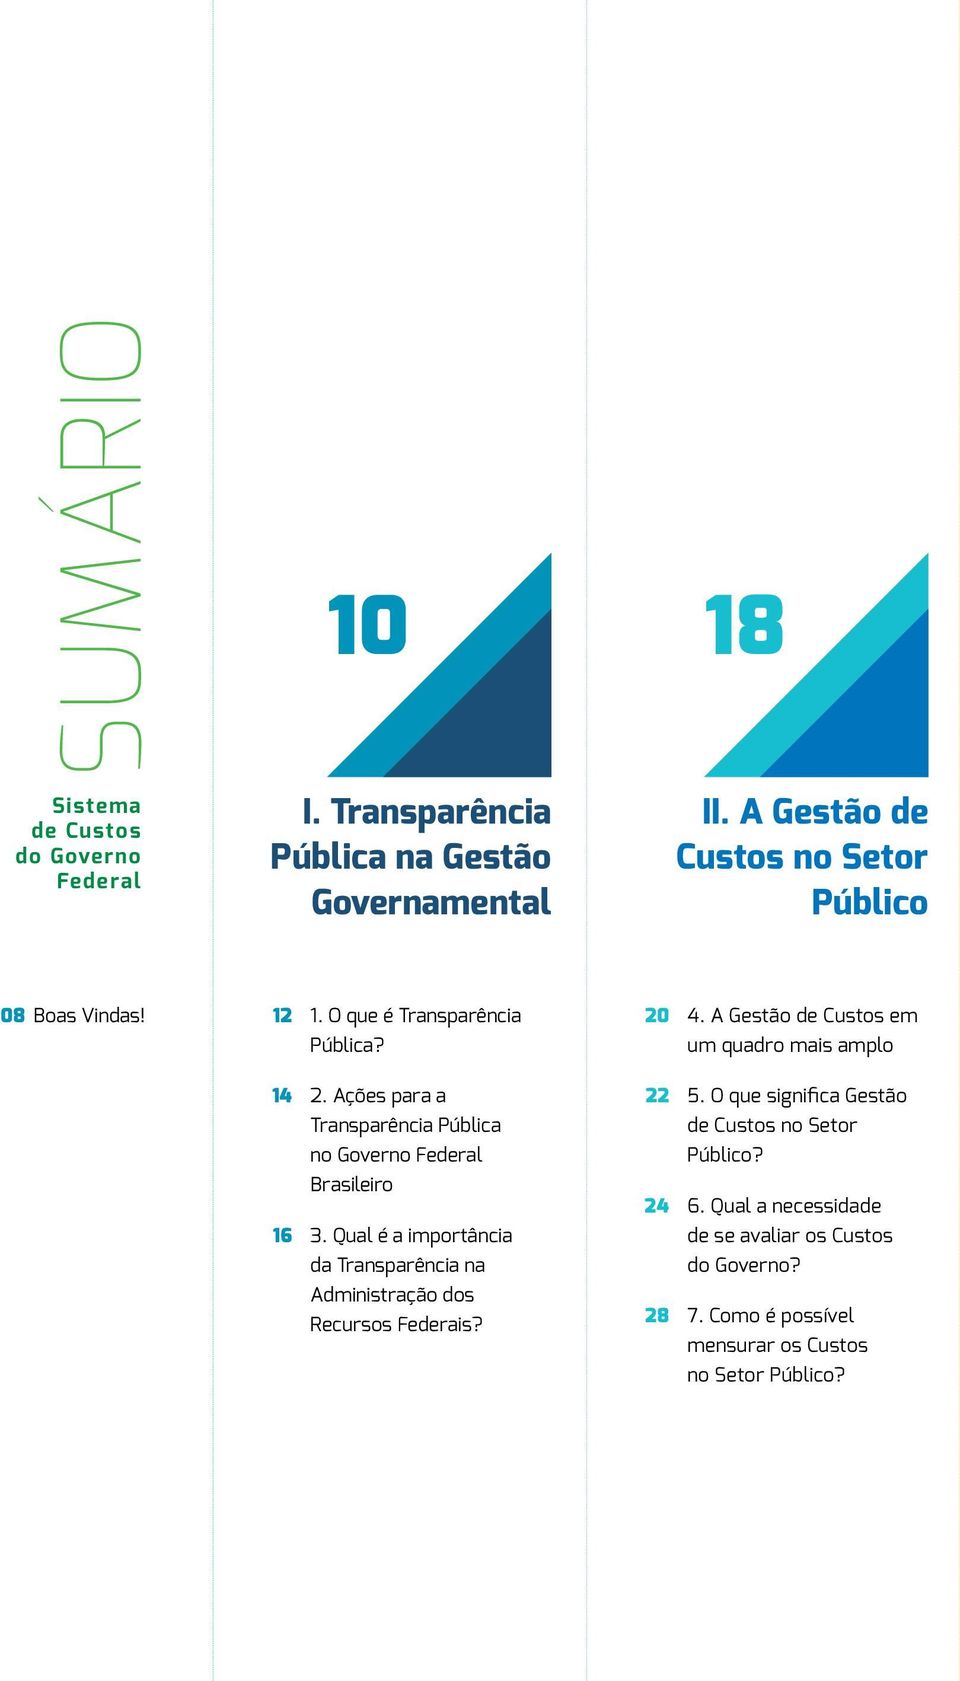 A Gestão de Custos em um quadro mais amplo 14 16 2. Ações para a Transparência Pública no Governo Federal Brasileiro 3.